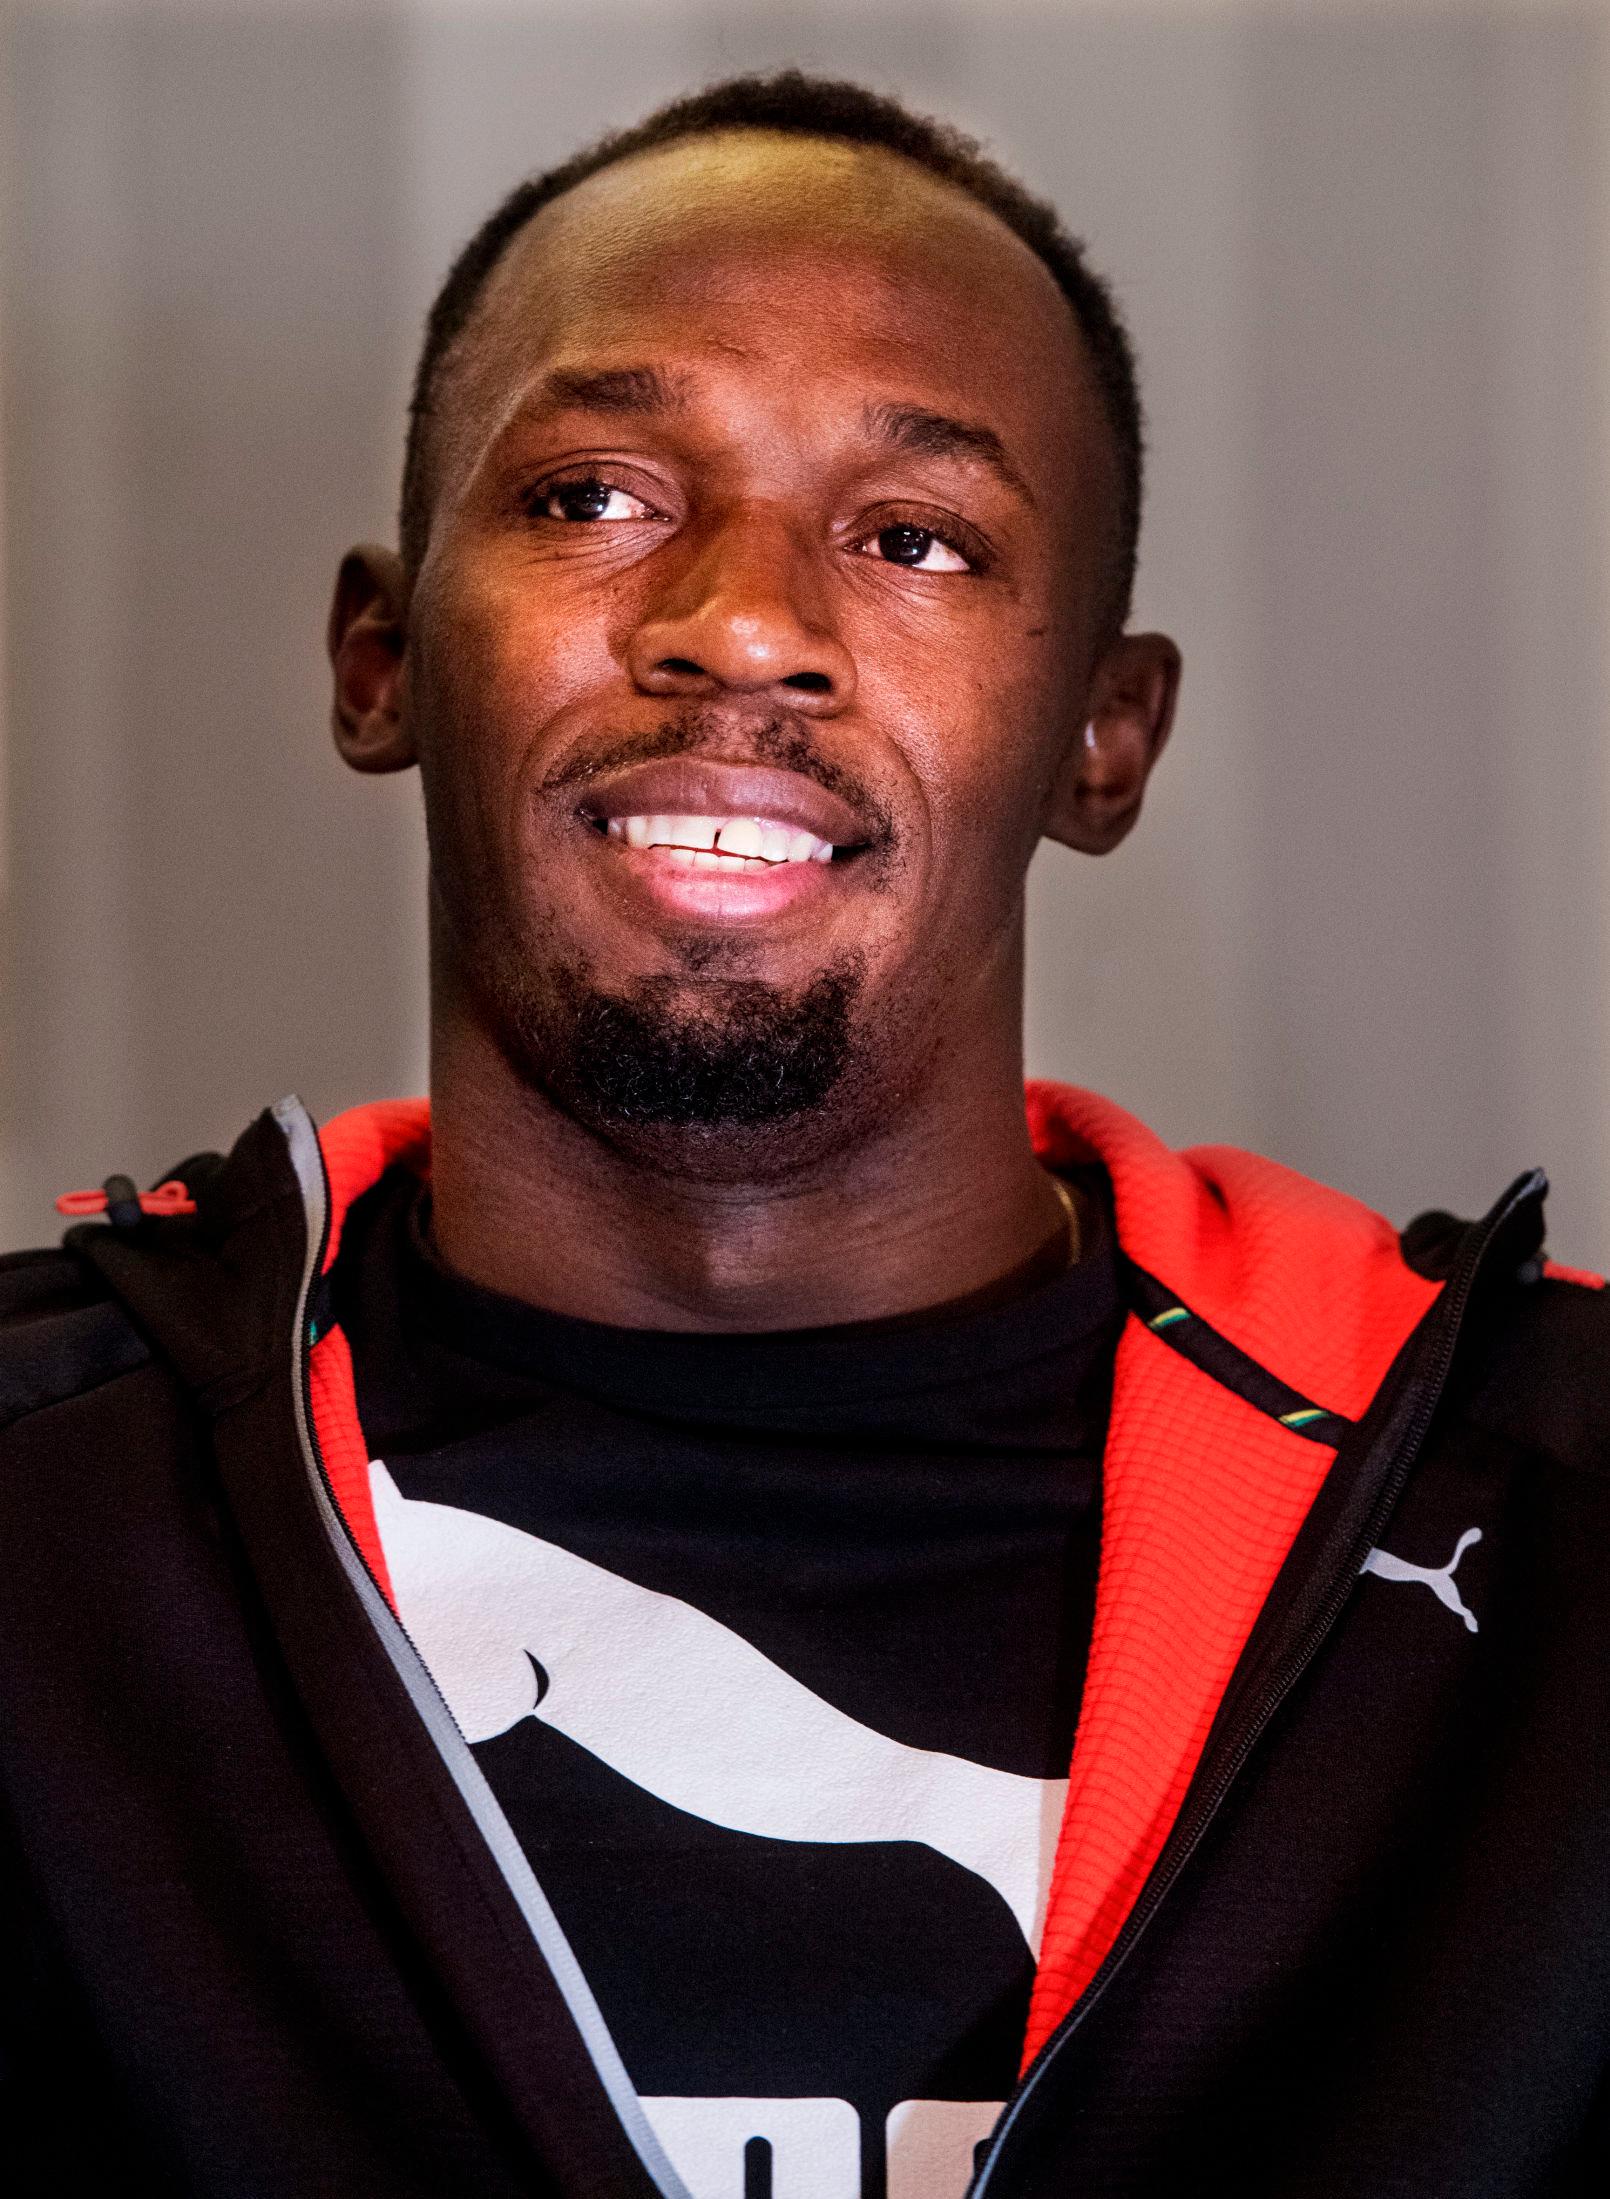 VERDENS RASKESTE: Usain Bolt er verdensrekordholder på både 100- og 200-meter. Foto: Helge Mikalsen/VG